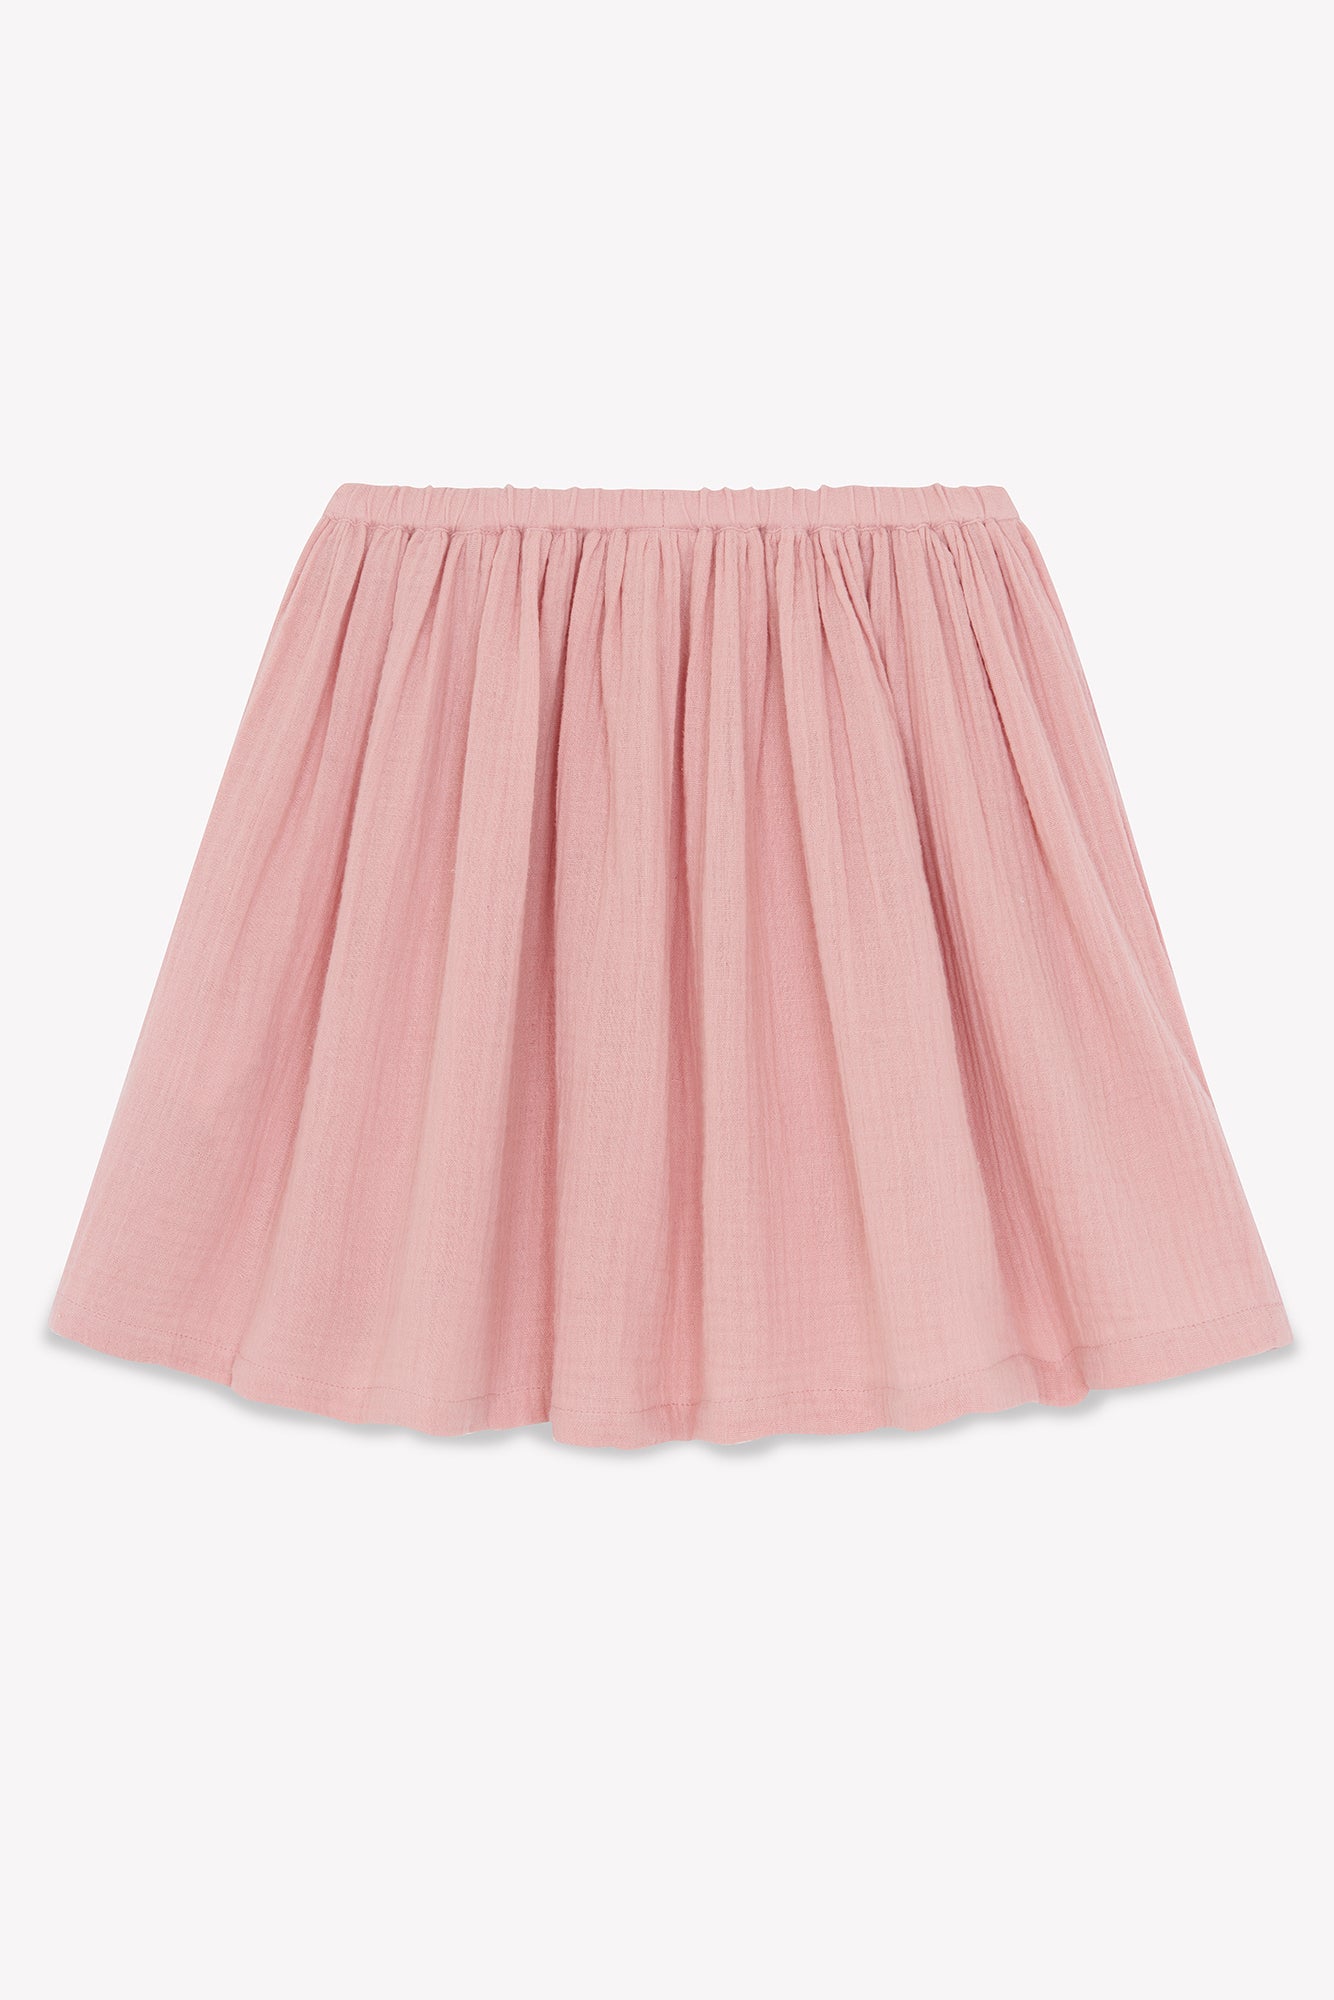 Skirt Raspberry Pink GOTS certified organic cotton gauze